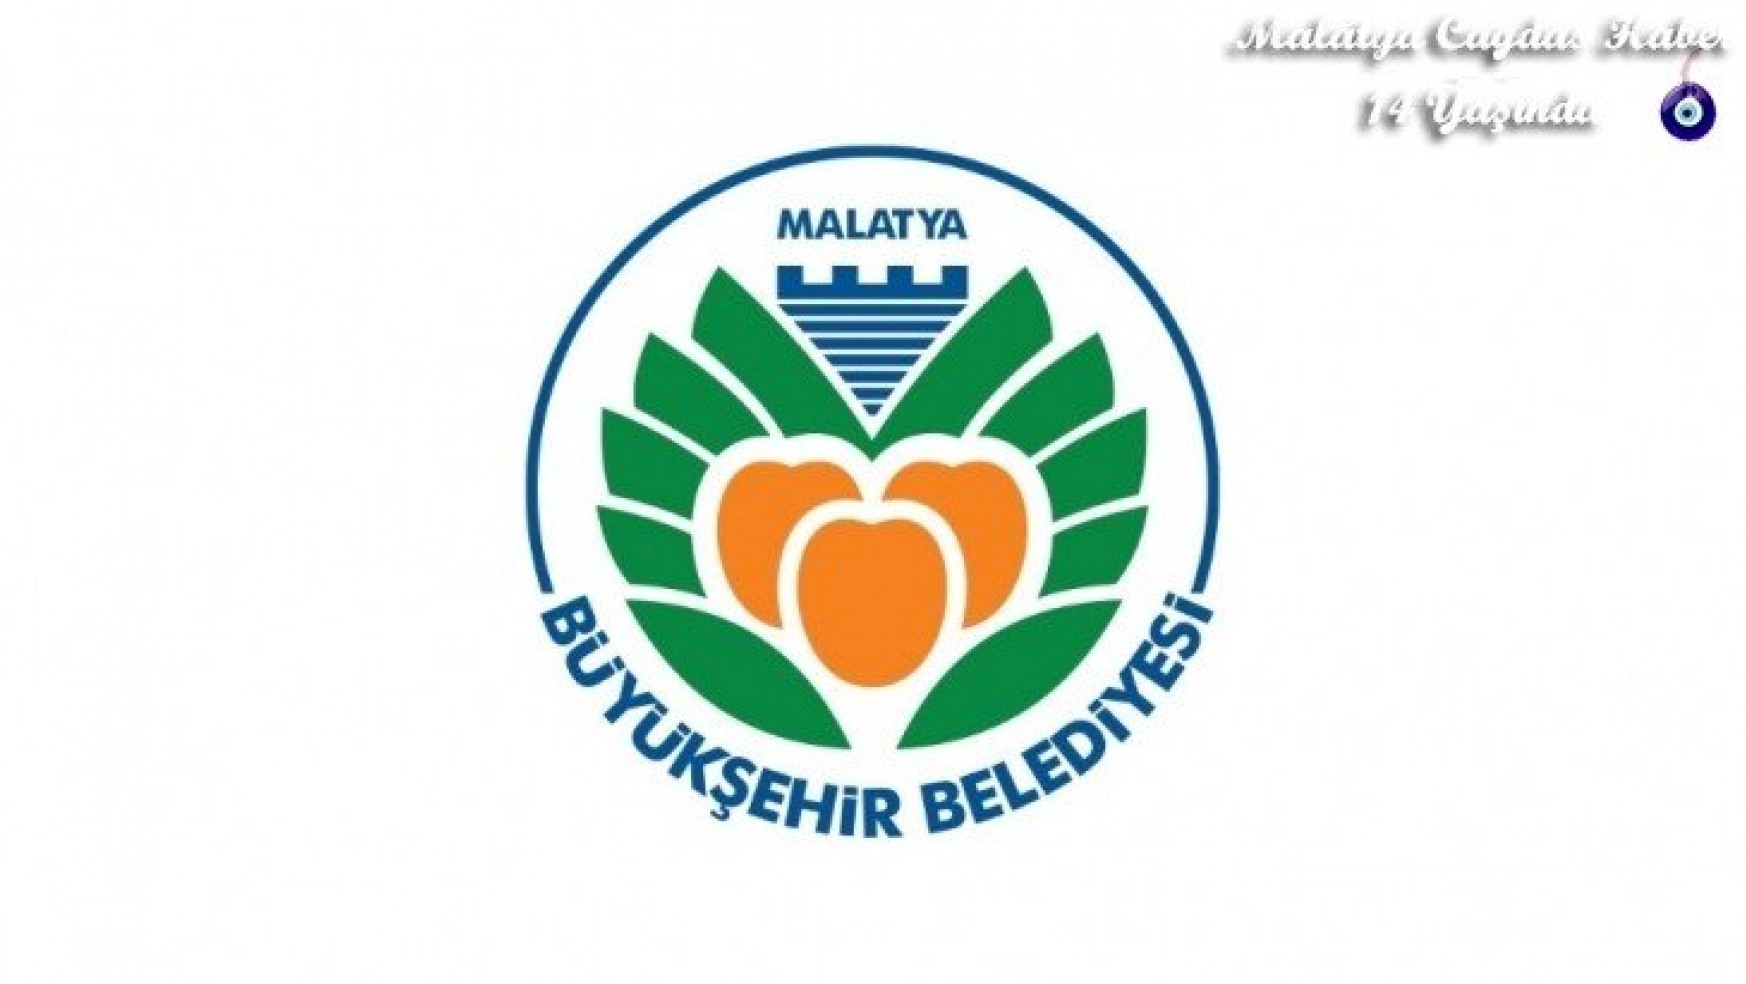 Malatya Büyükşehir Belediyesin'den sahtekarlık açıklaması